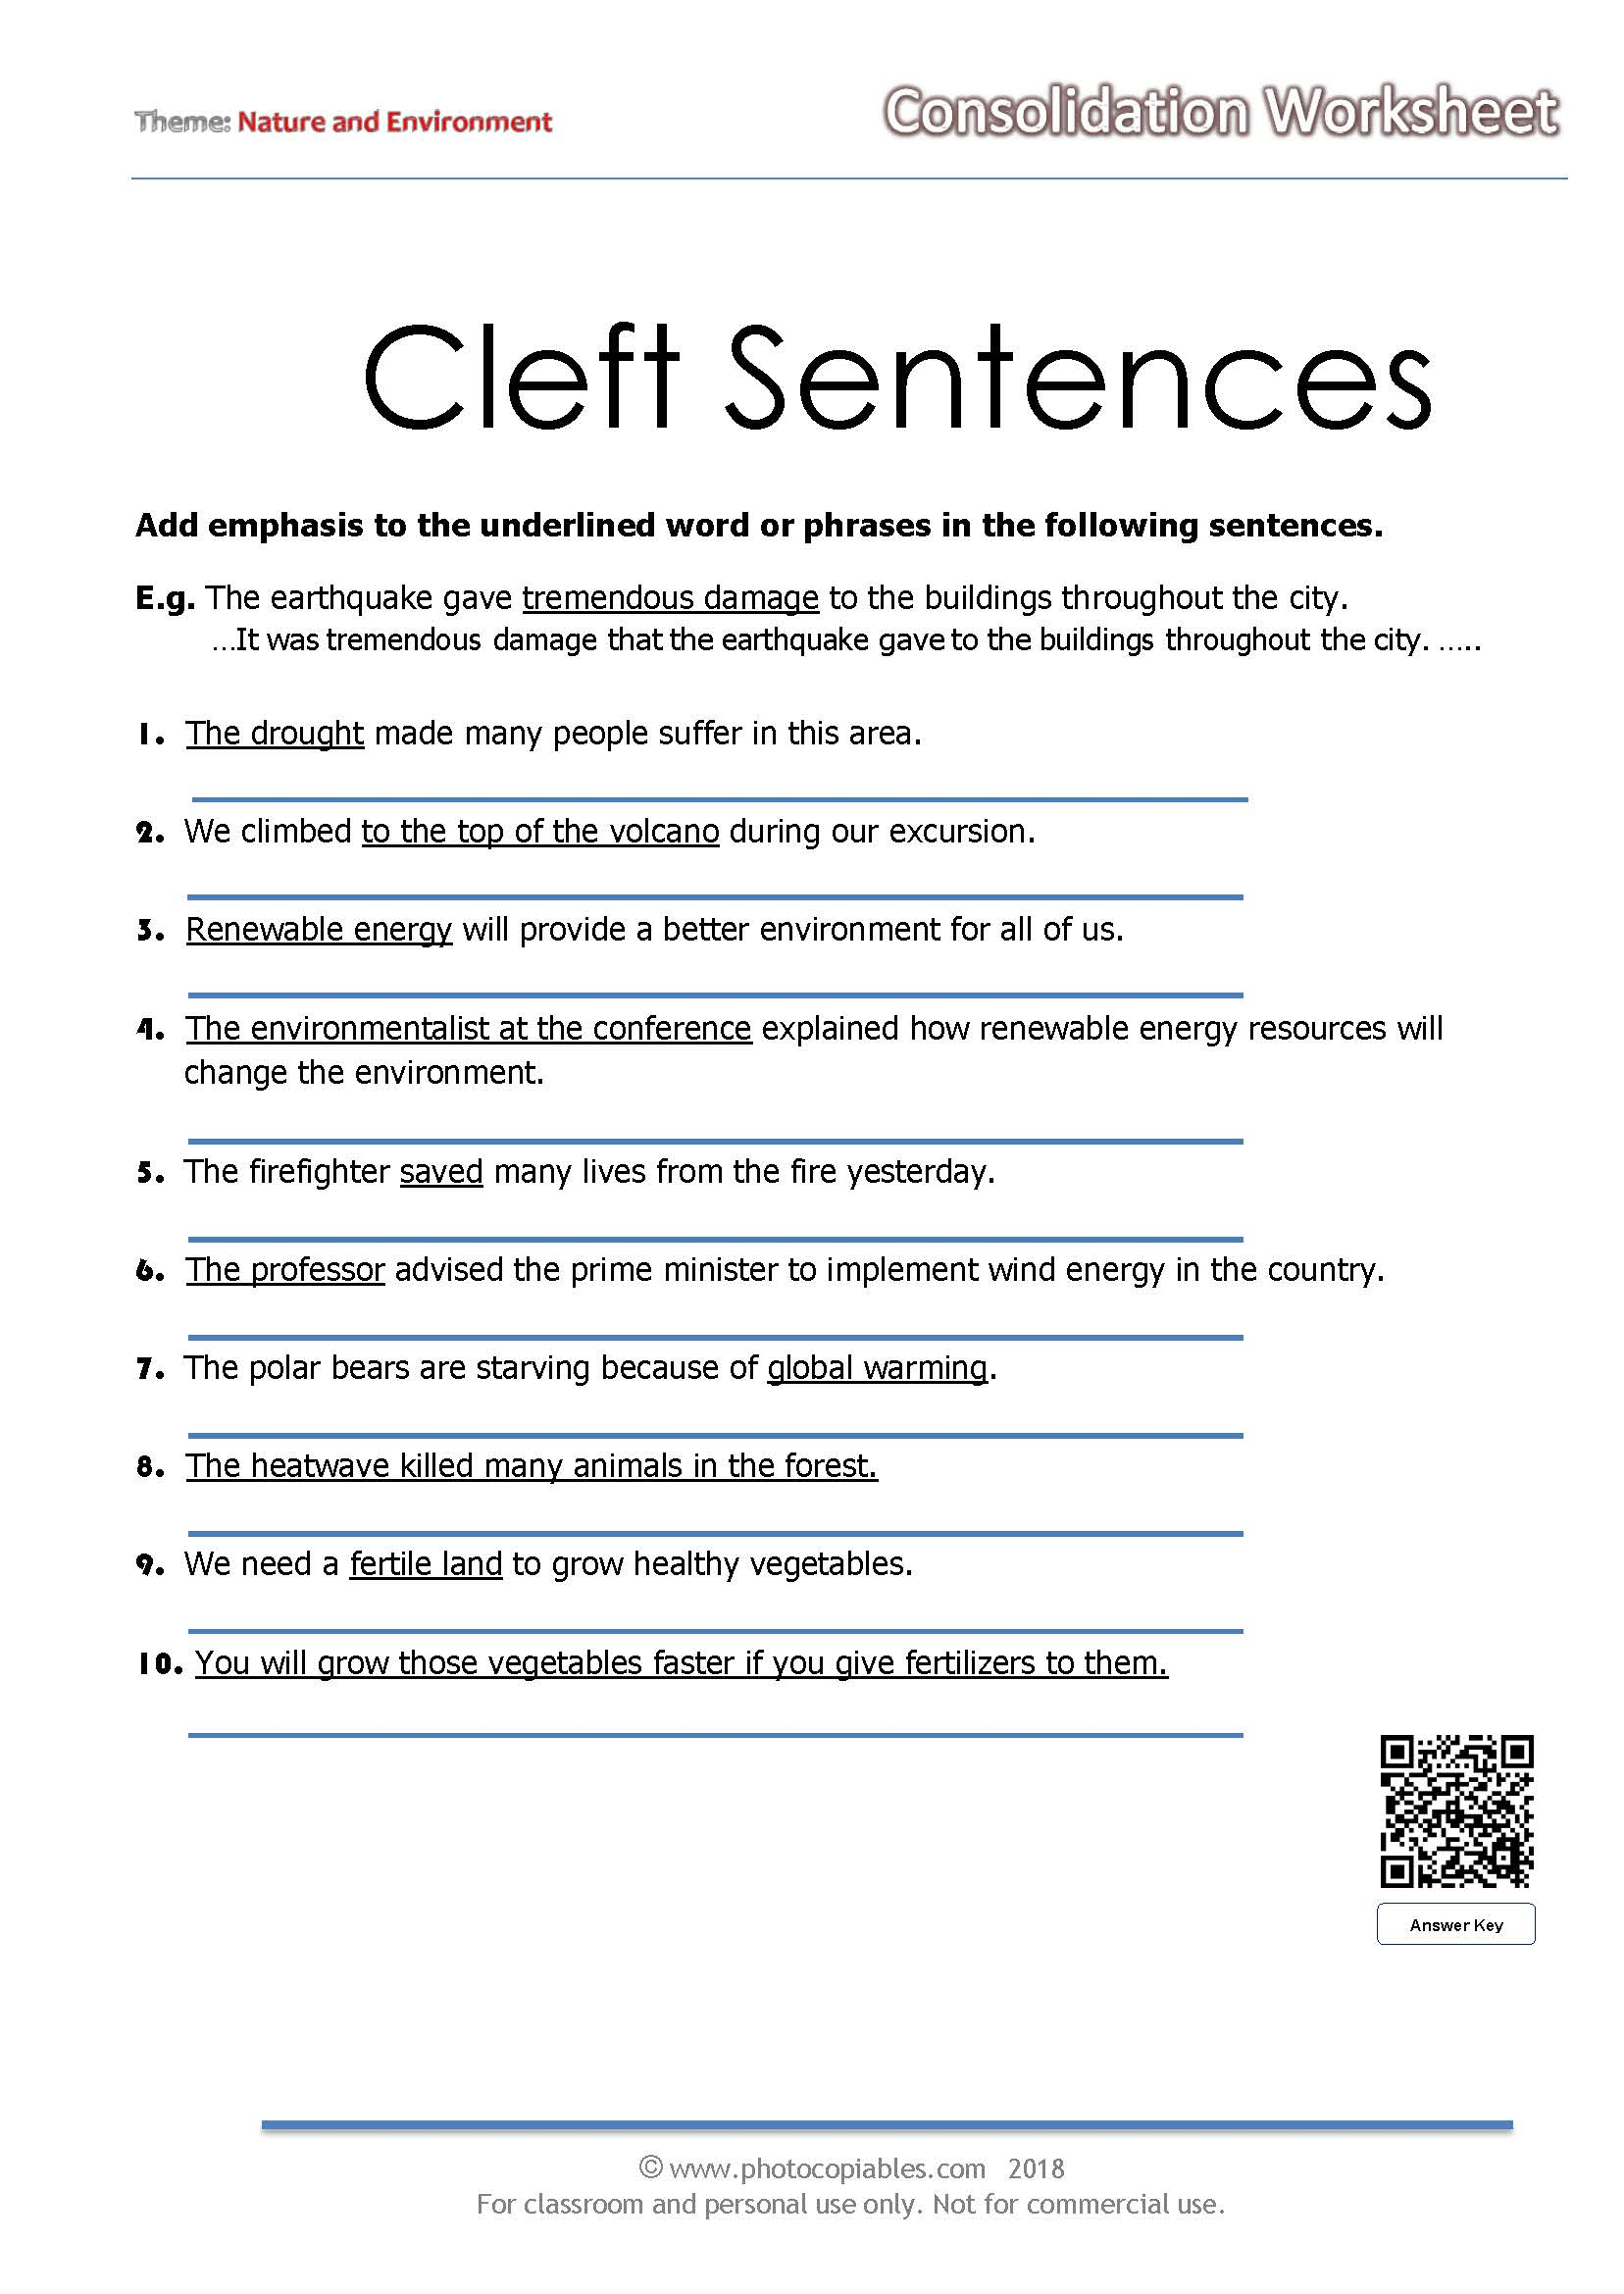 lesson-120-cleft-sentences-teletype